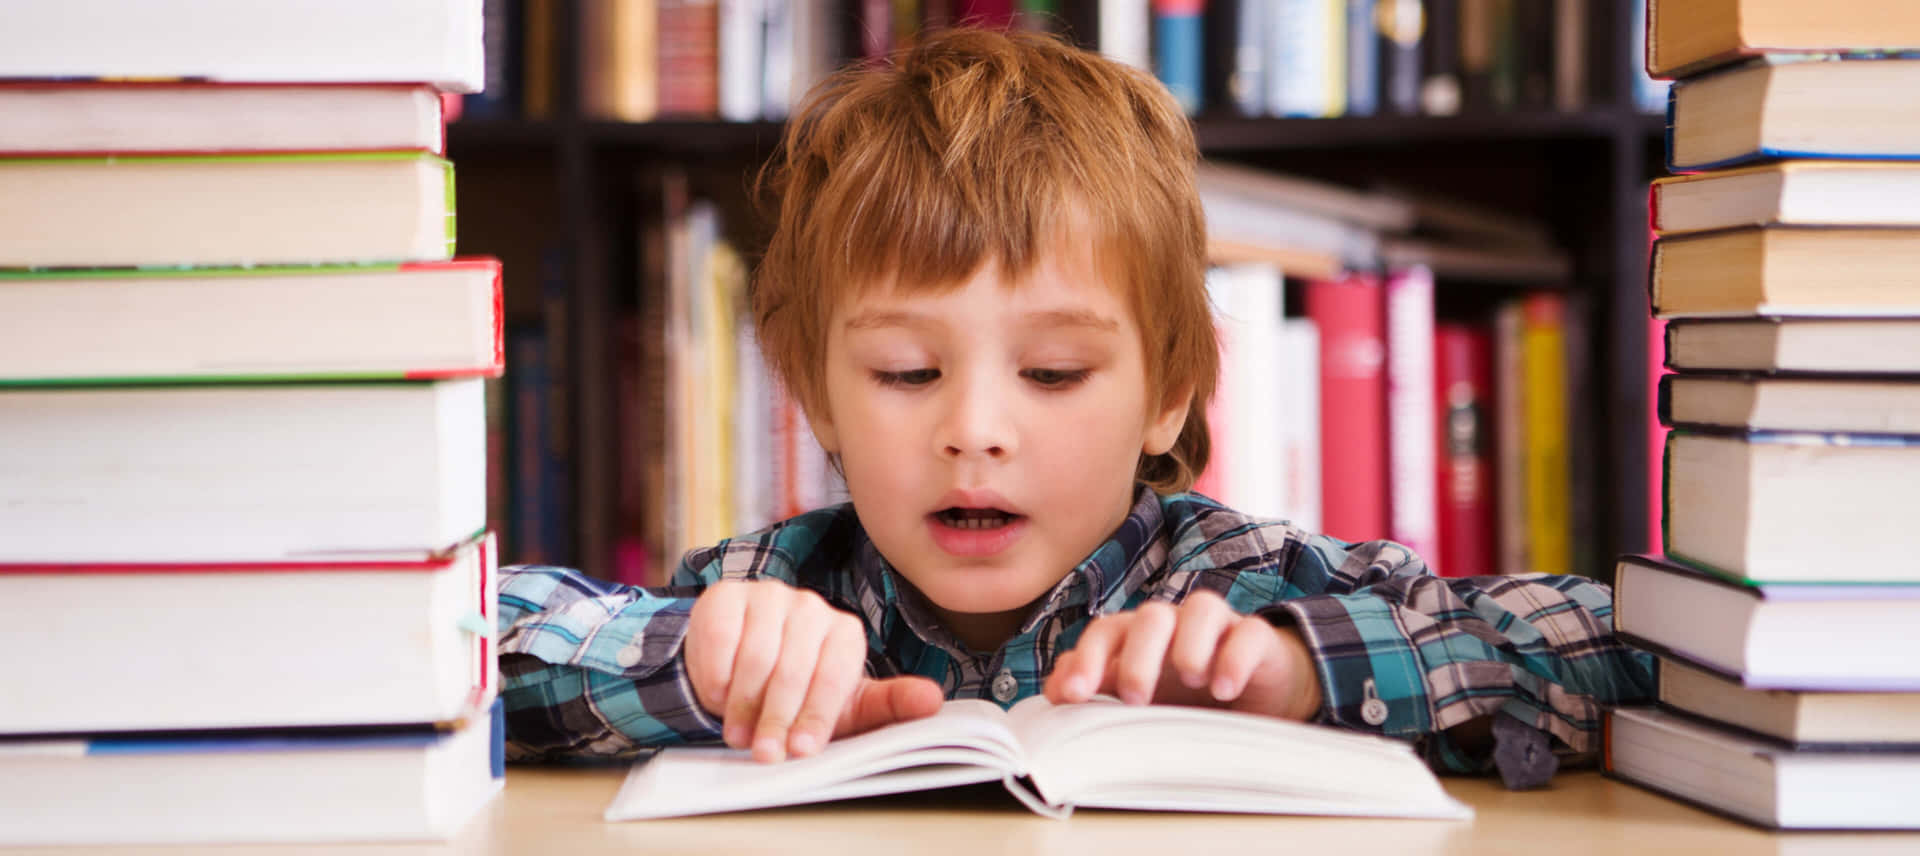 Einjunger Junge Liest Vor Einem Stapel Von Büchern Ein Buch.